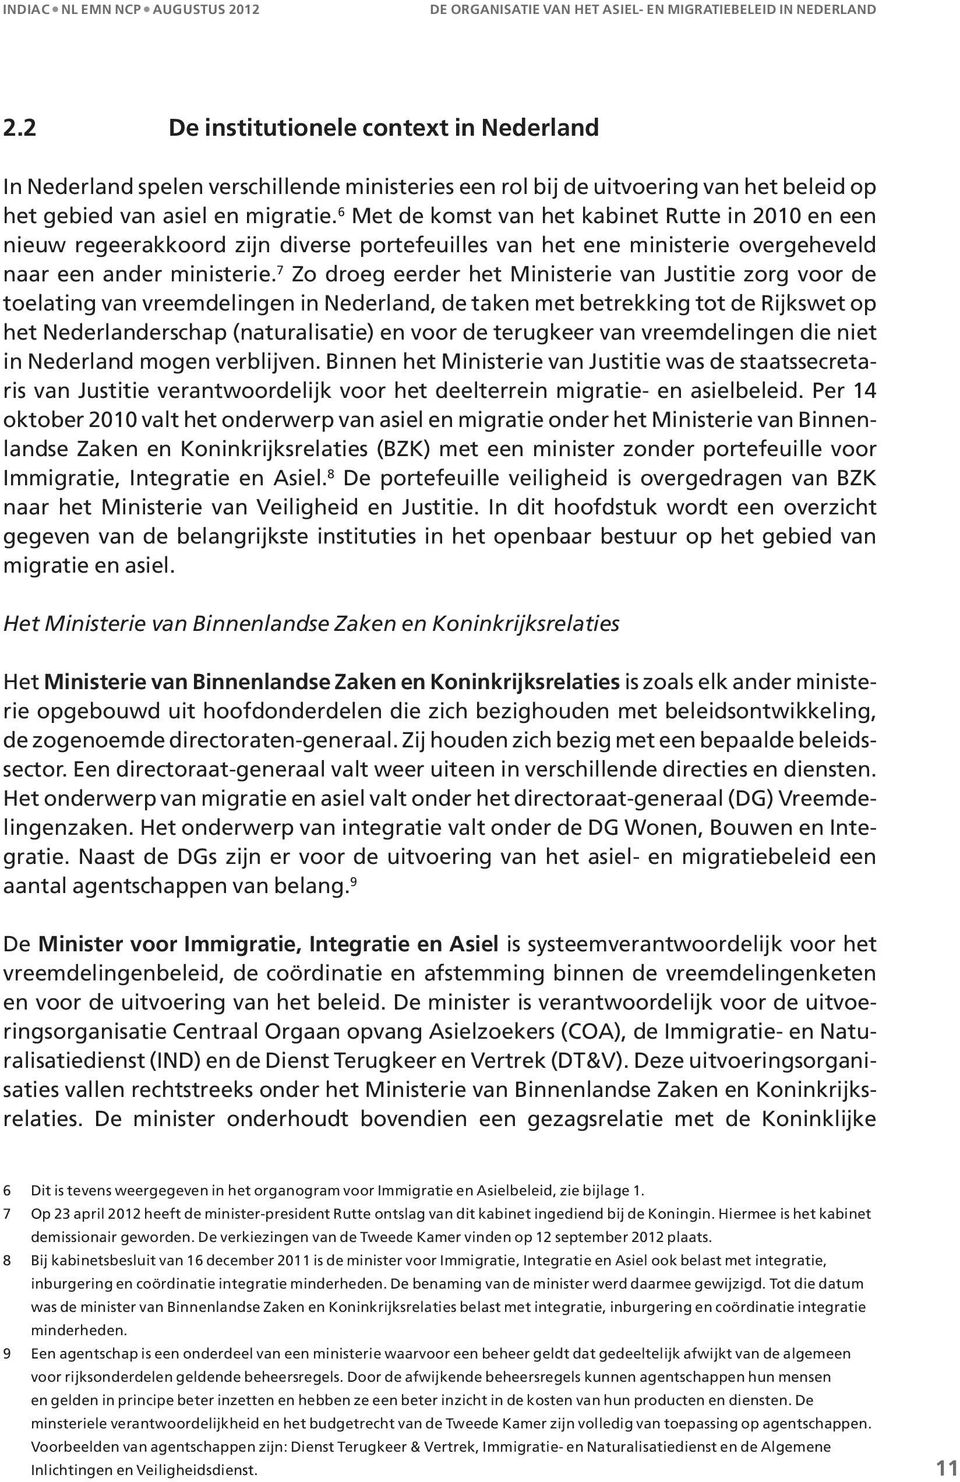 7 Zo droeg eerder het Ministerie van Justitie zorg voor de toelating van vreemdelingen in Nederland, de taken met betrekking tot de Rijkswet op het Nederlanderschap (naturalisatie) en voor de